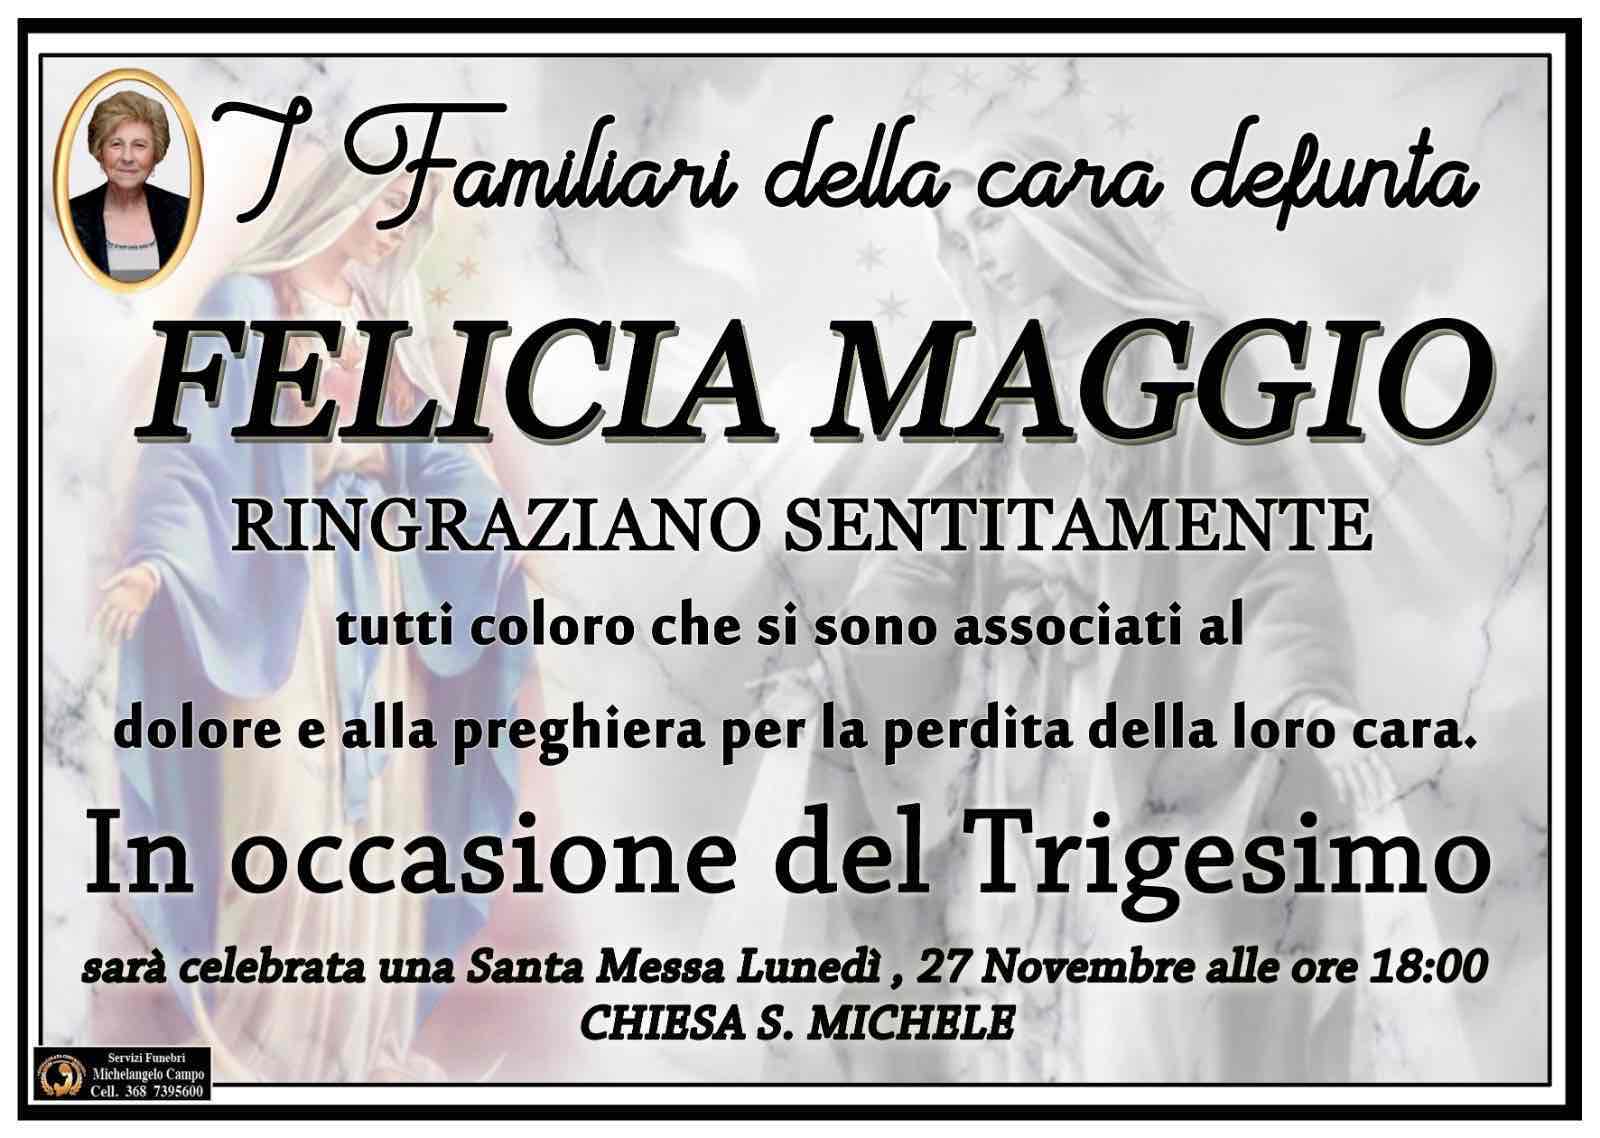 Felicia Maggio